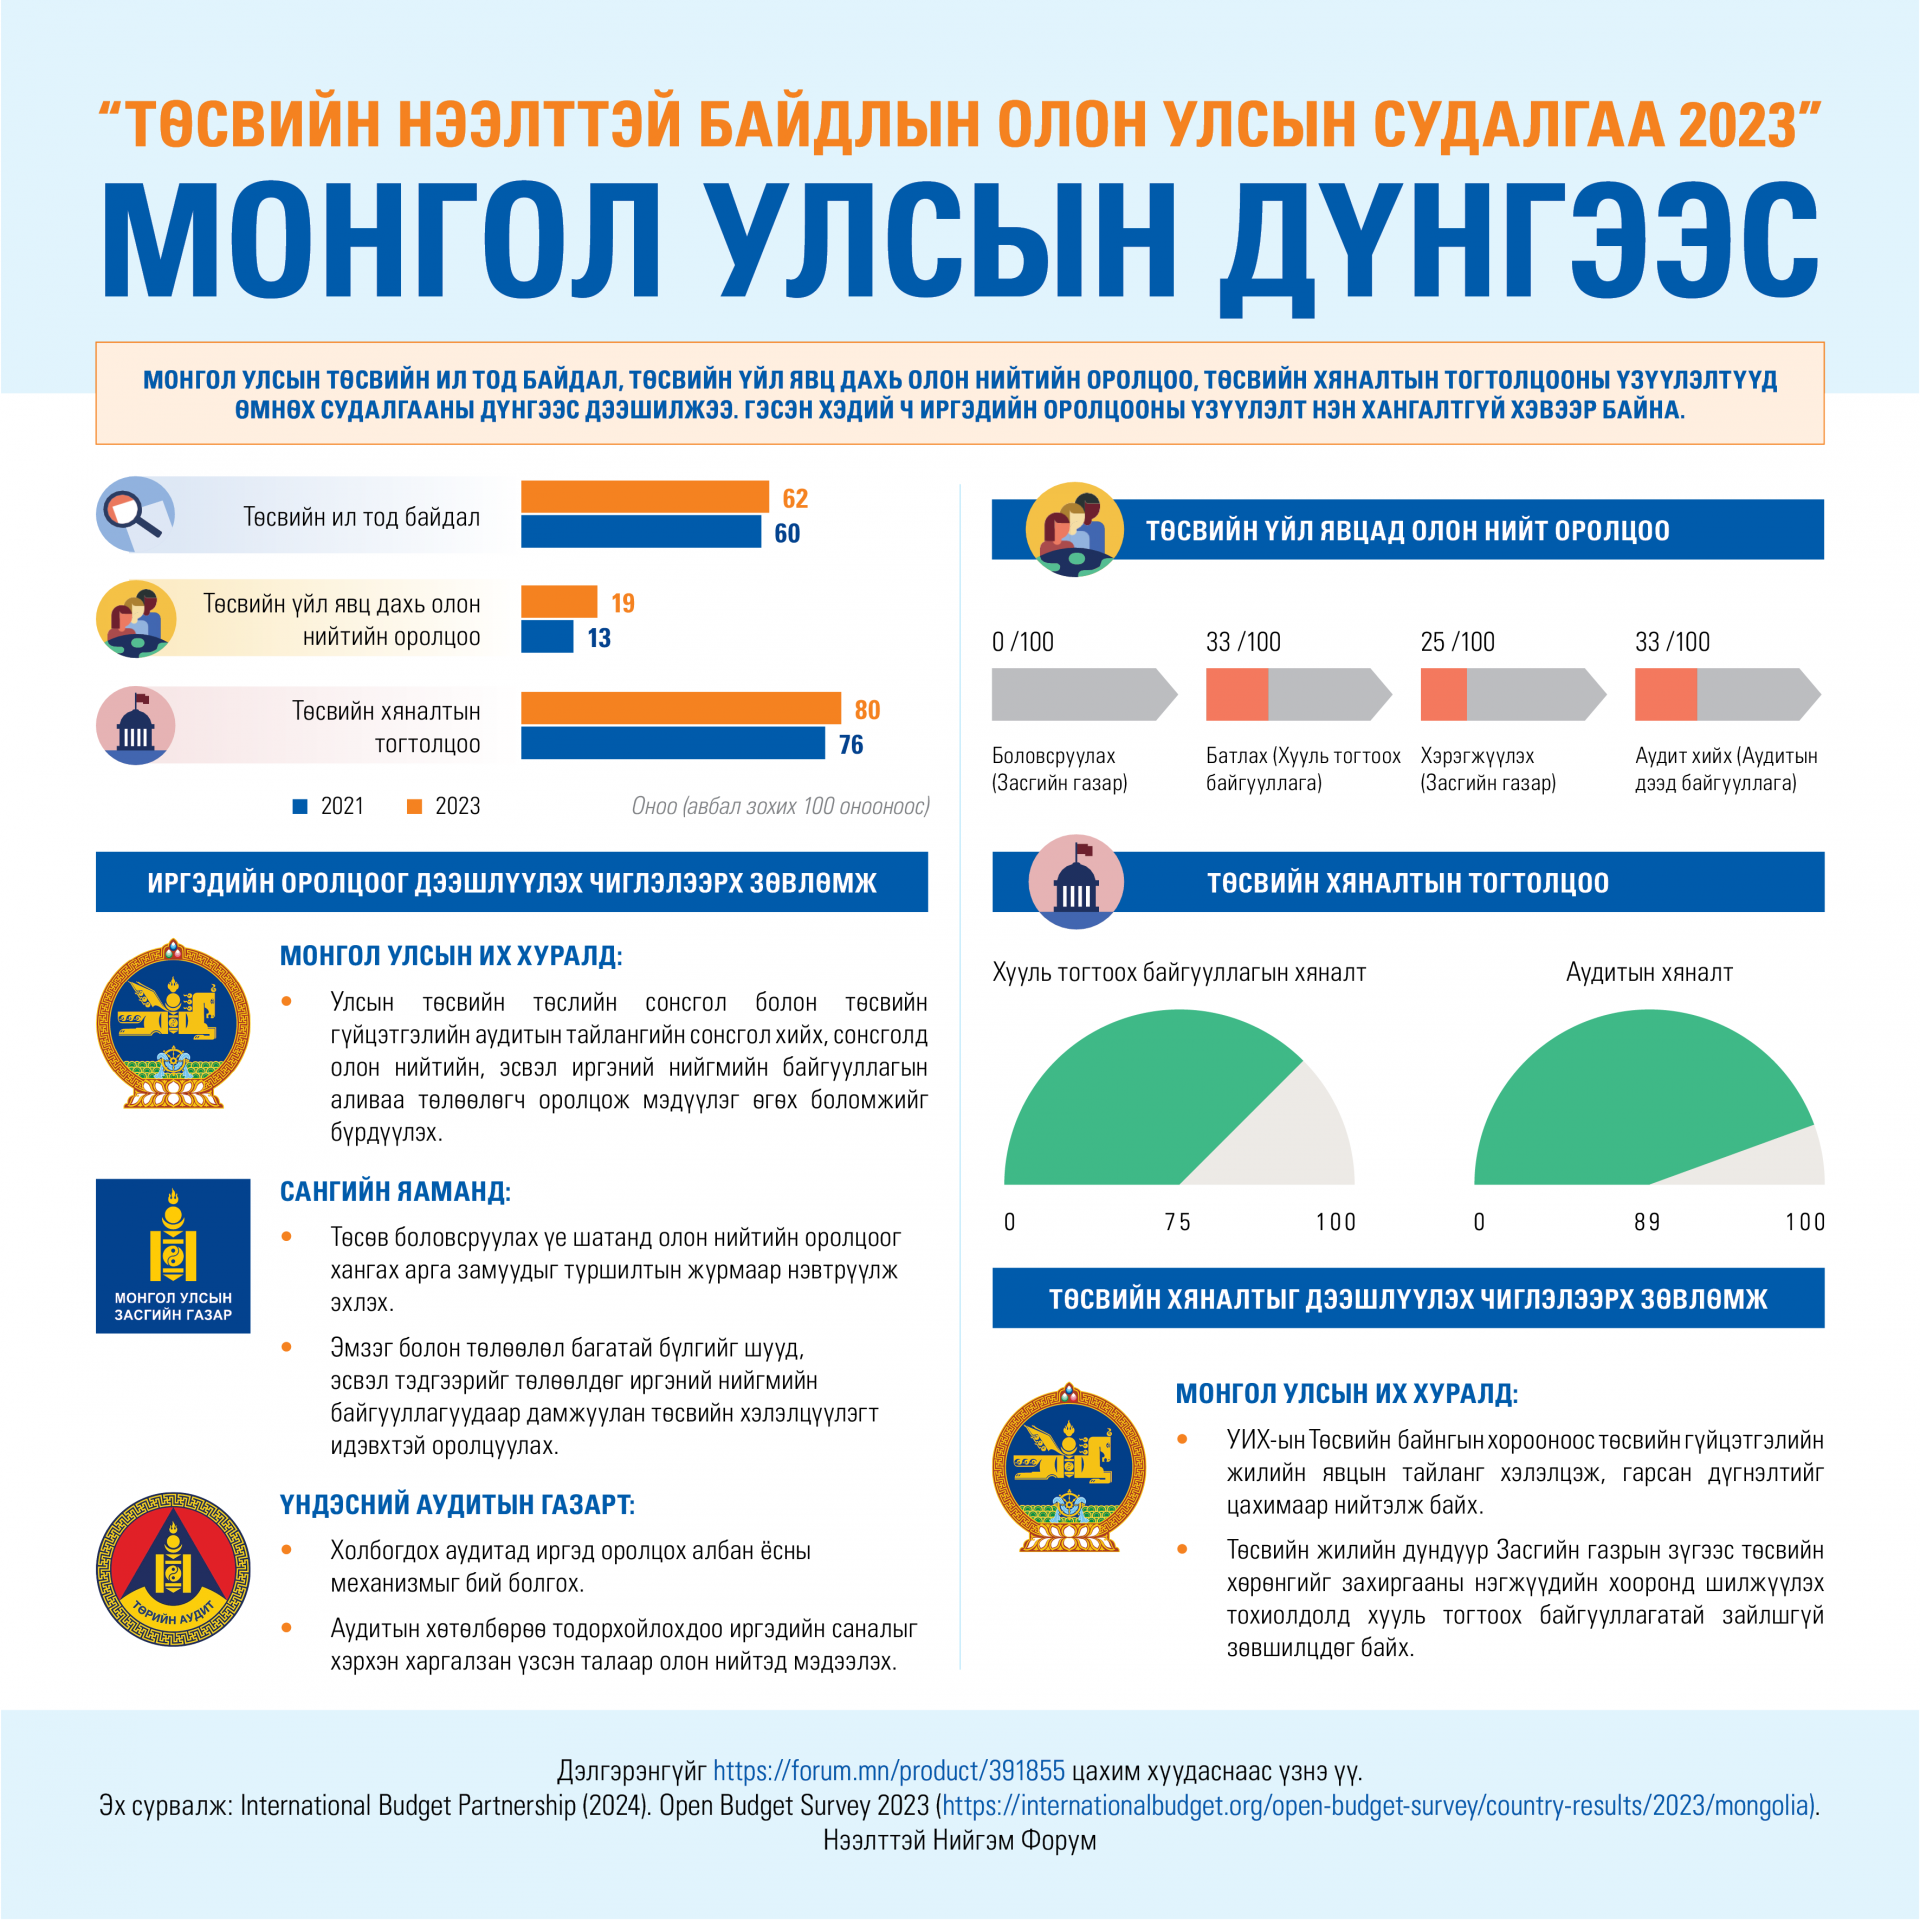 “Төсвийн нээлттэй байдлын олон улсын судалгаа 2023” Монгол Улсын дүнгээс